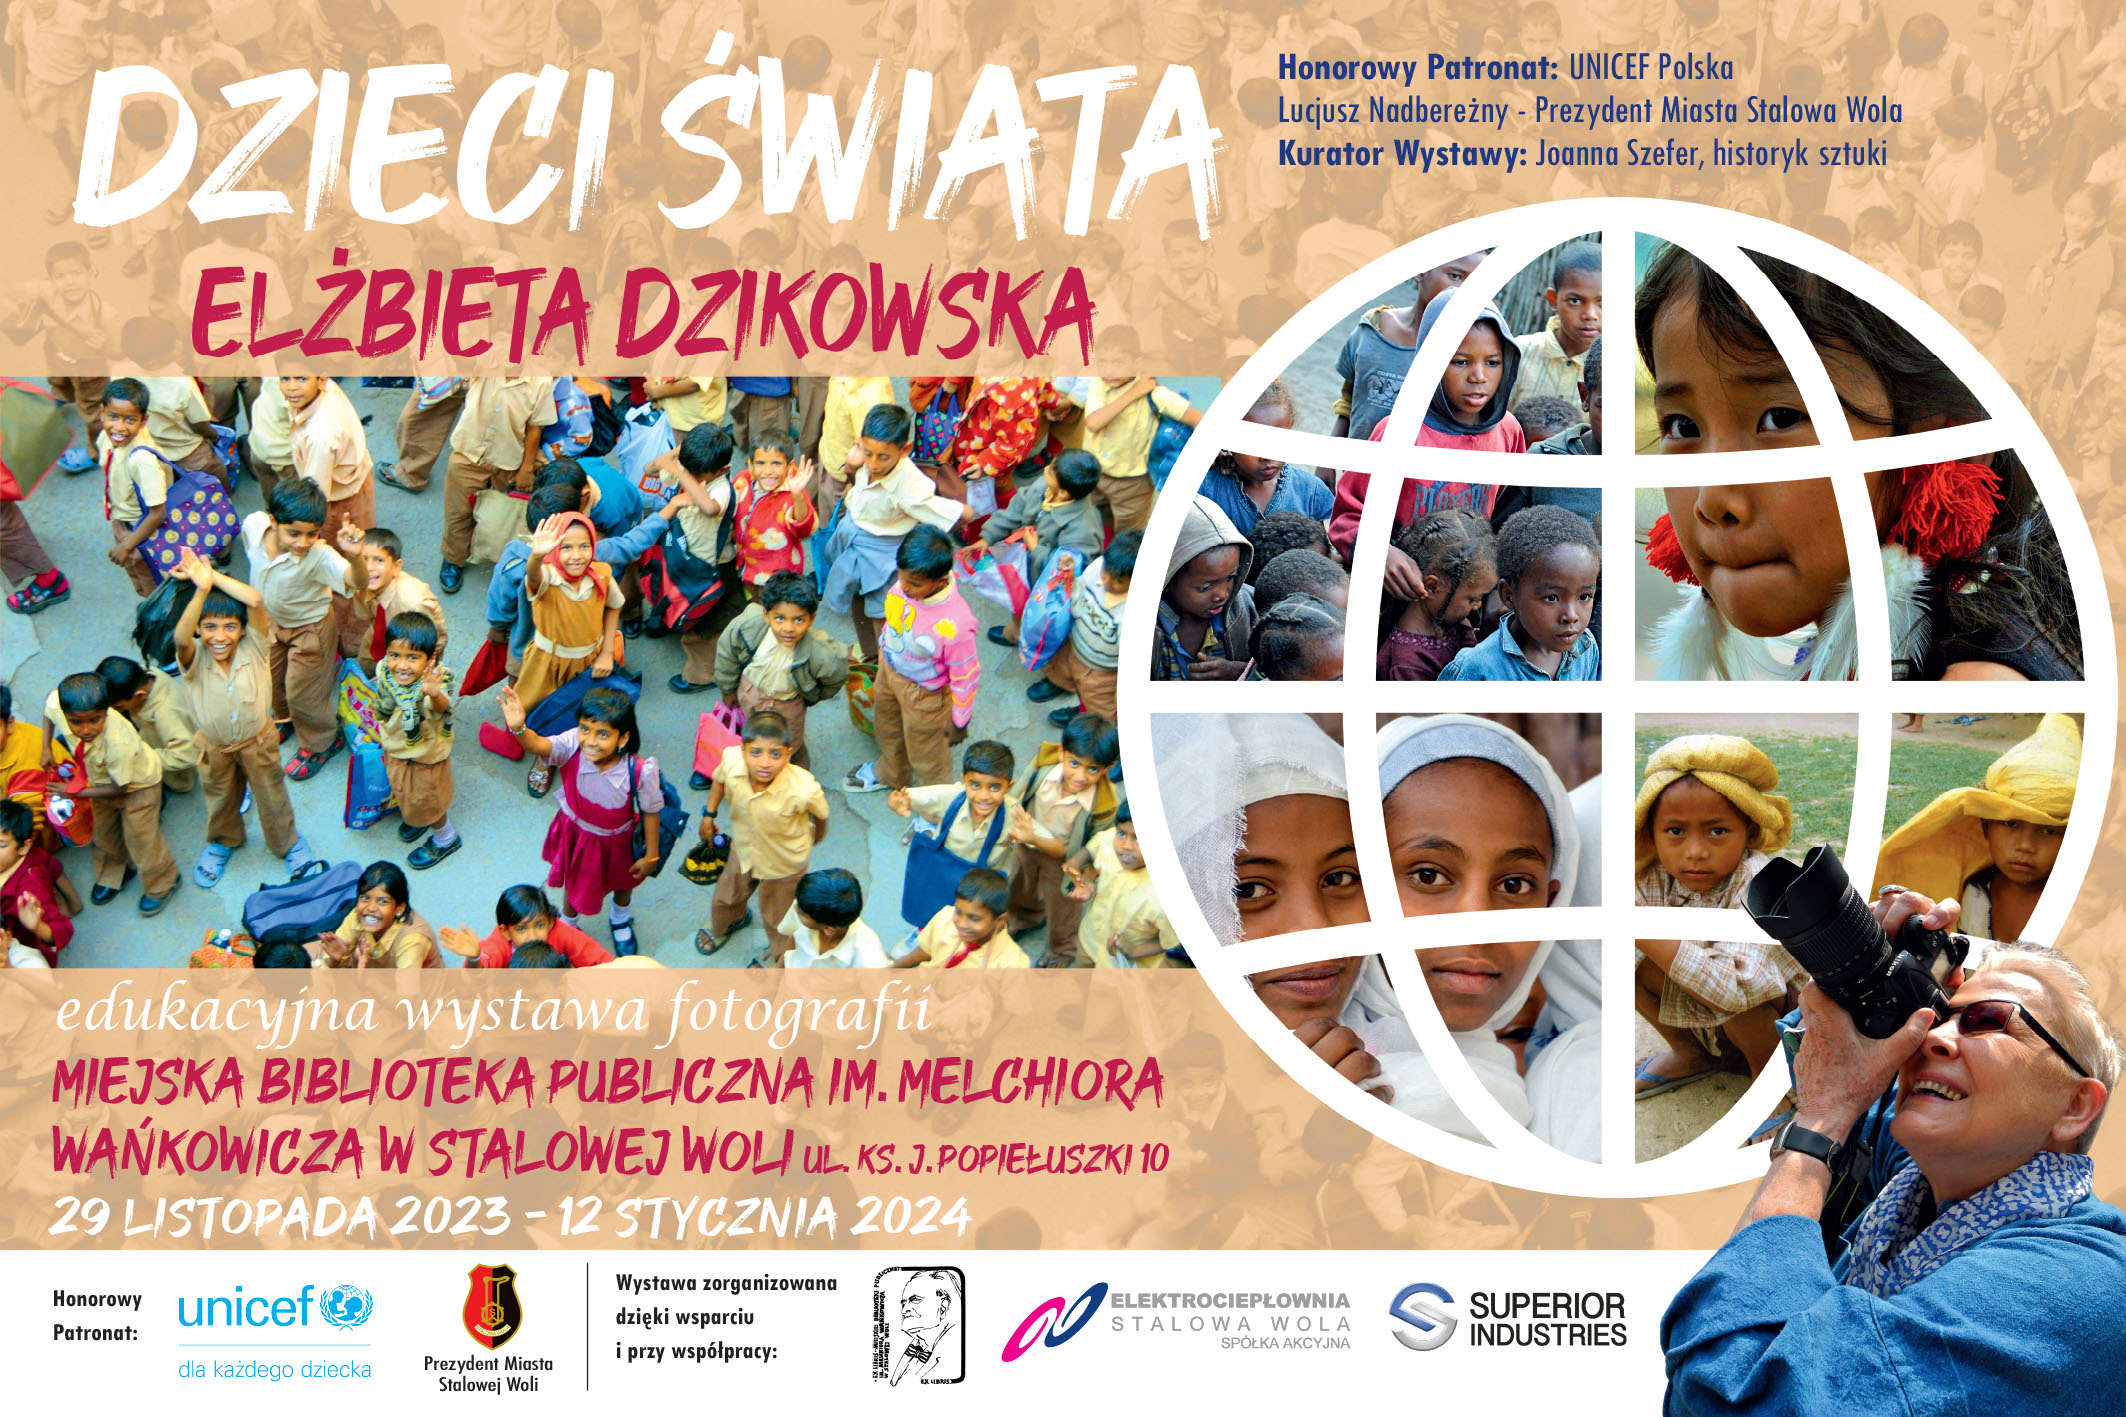 Edukacyjna wystawa fotografii „Dzieci Świata” Elżbiety Dzikowskiej i konkurs plastyczny dla dzieci